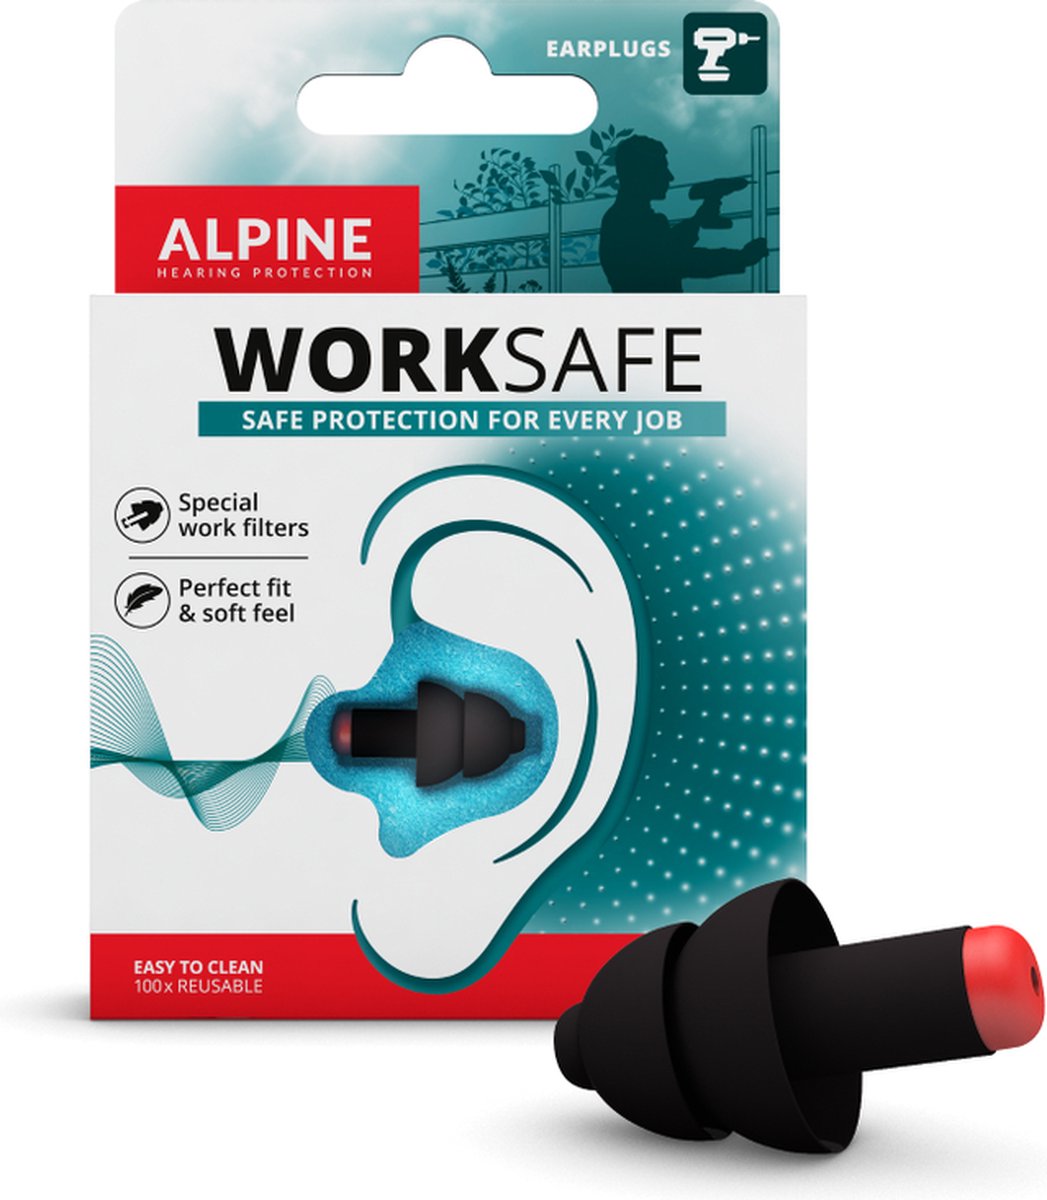 Alpine WorkSafe Oordoppen - Earplugs beschermen jouw gehoor tijdens het klussen (23dB) - Gemakkelijk te verwijderen met handschoenen (groter formaat) - Inclusief draagkoord - Zwart - 1 paar - Alpine Hearing protection